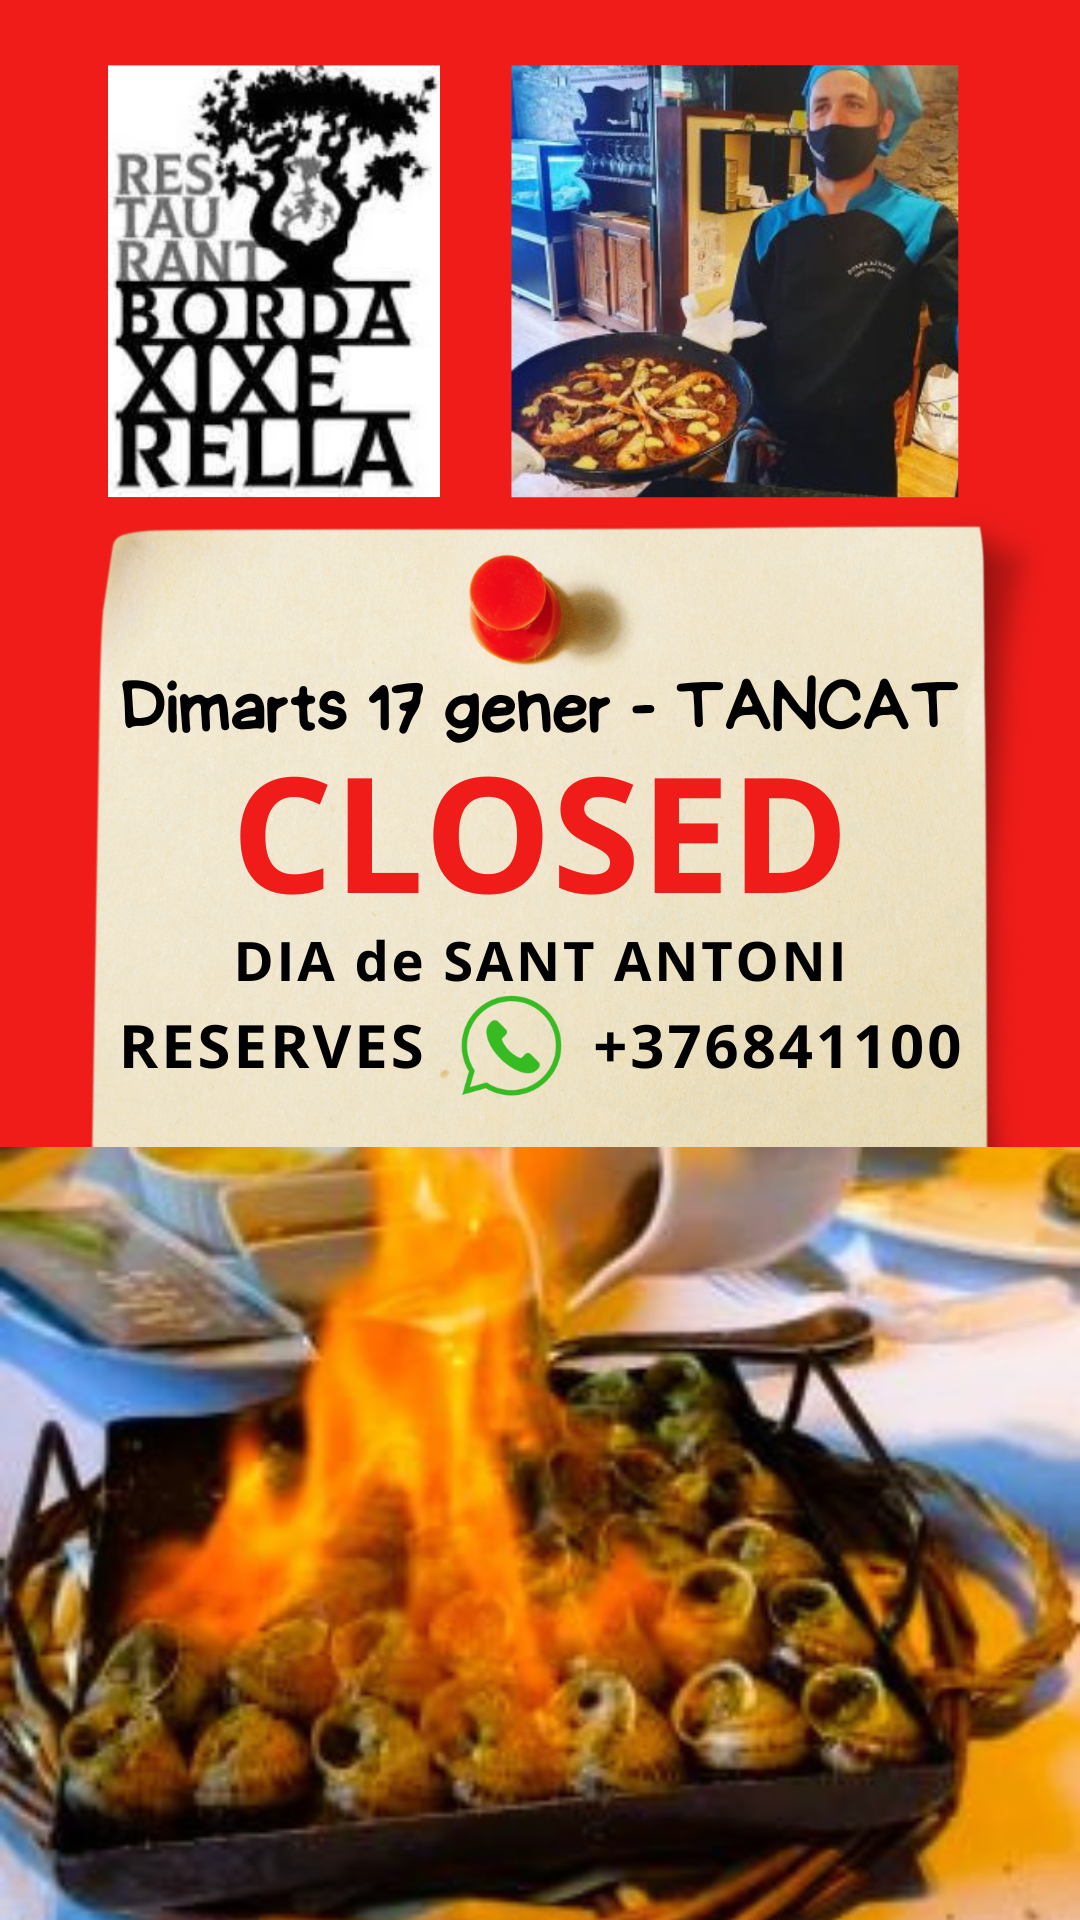 BORDA XIXERELLA - dimarts 17 de gener tancat - Dia de Sant Antoni, podeu menjar Escudella a la plaça de les Fontetes a La Massana